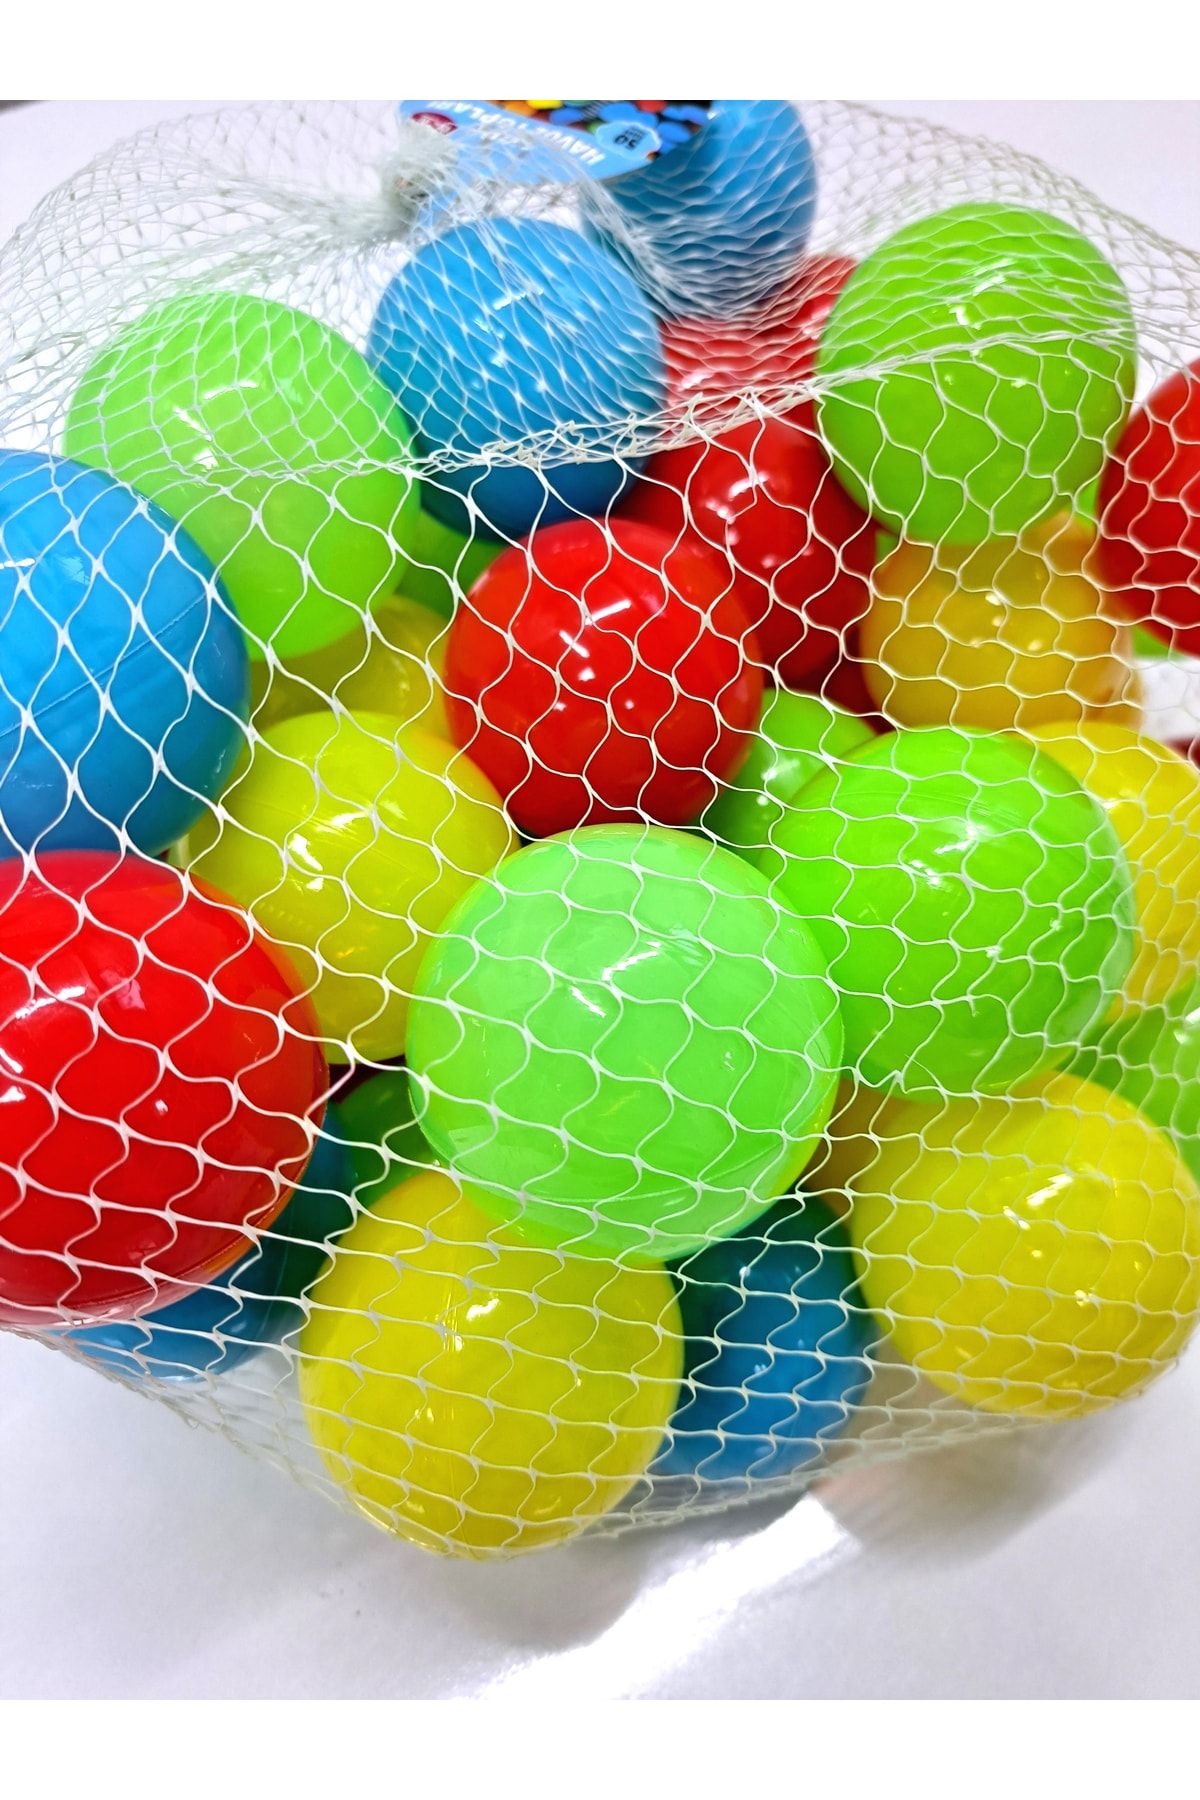 ALYTOYS Oyuncak Havuz Topu Oyun Alanı Topu Oyun Parkı Top 6cm Çap Rengarenk Filede Yumuşak 28adet